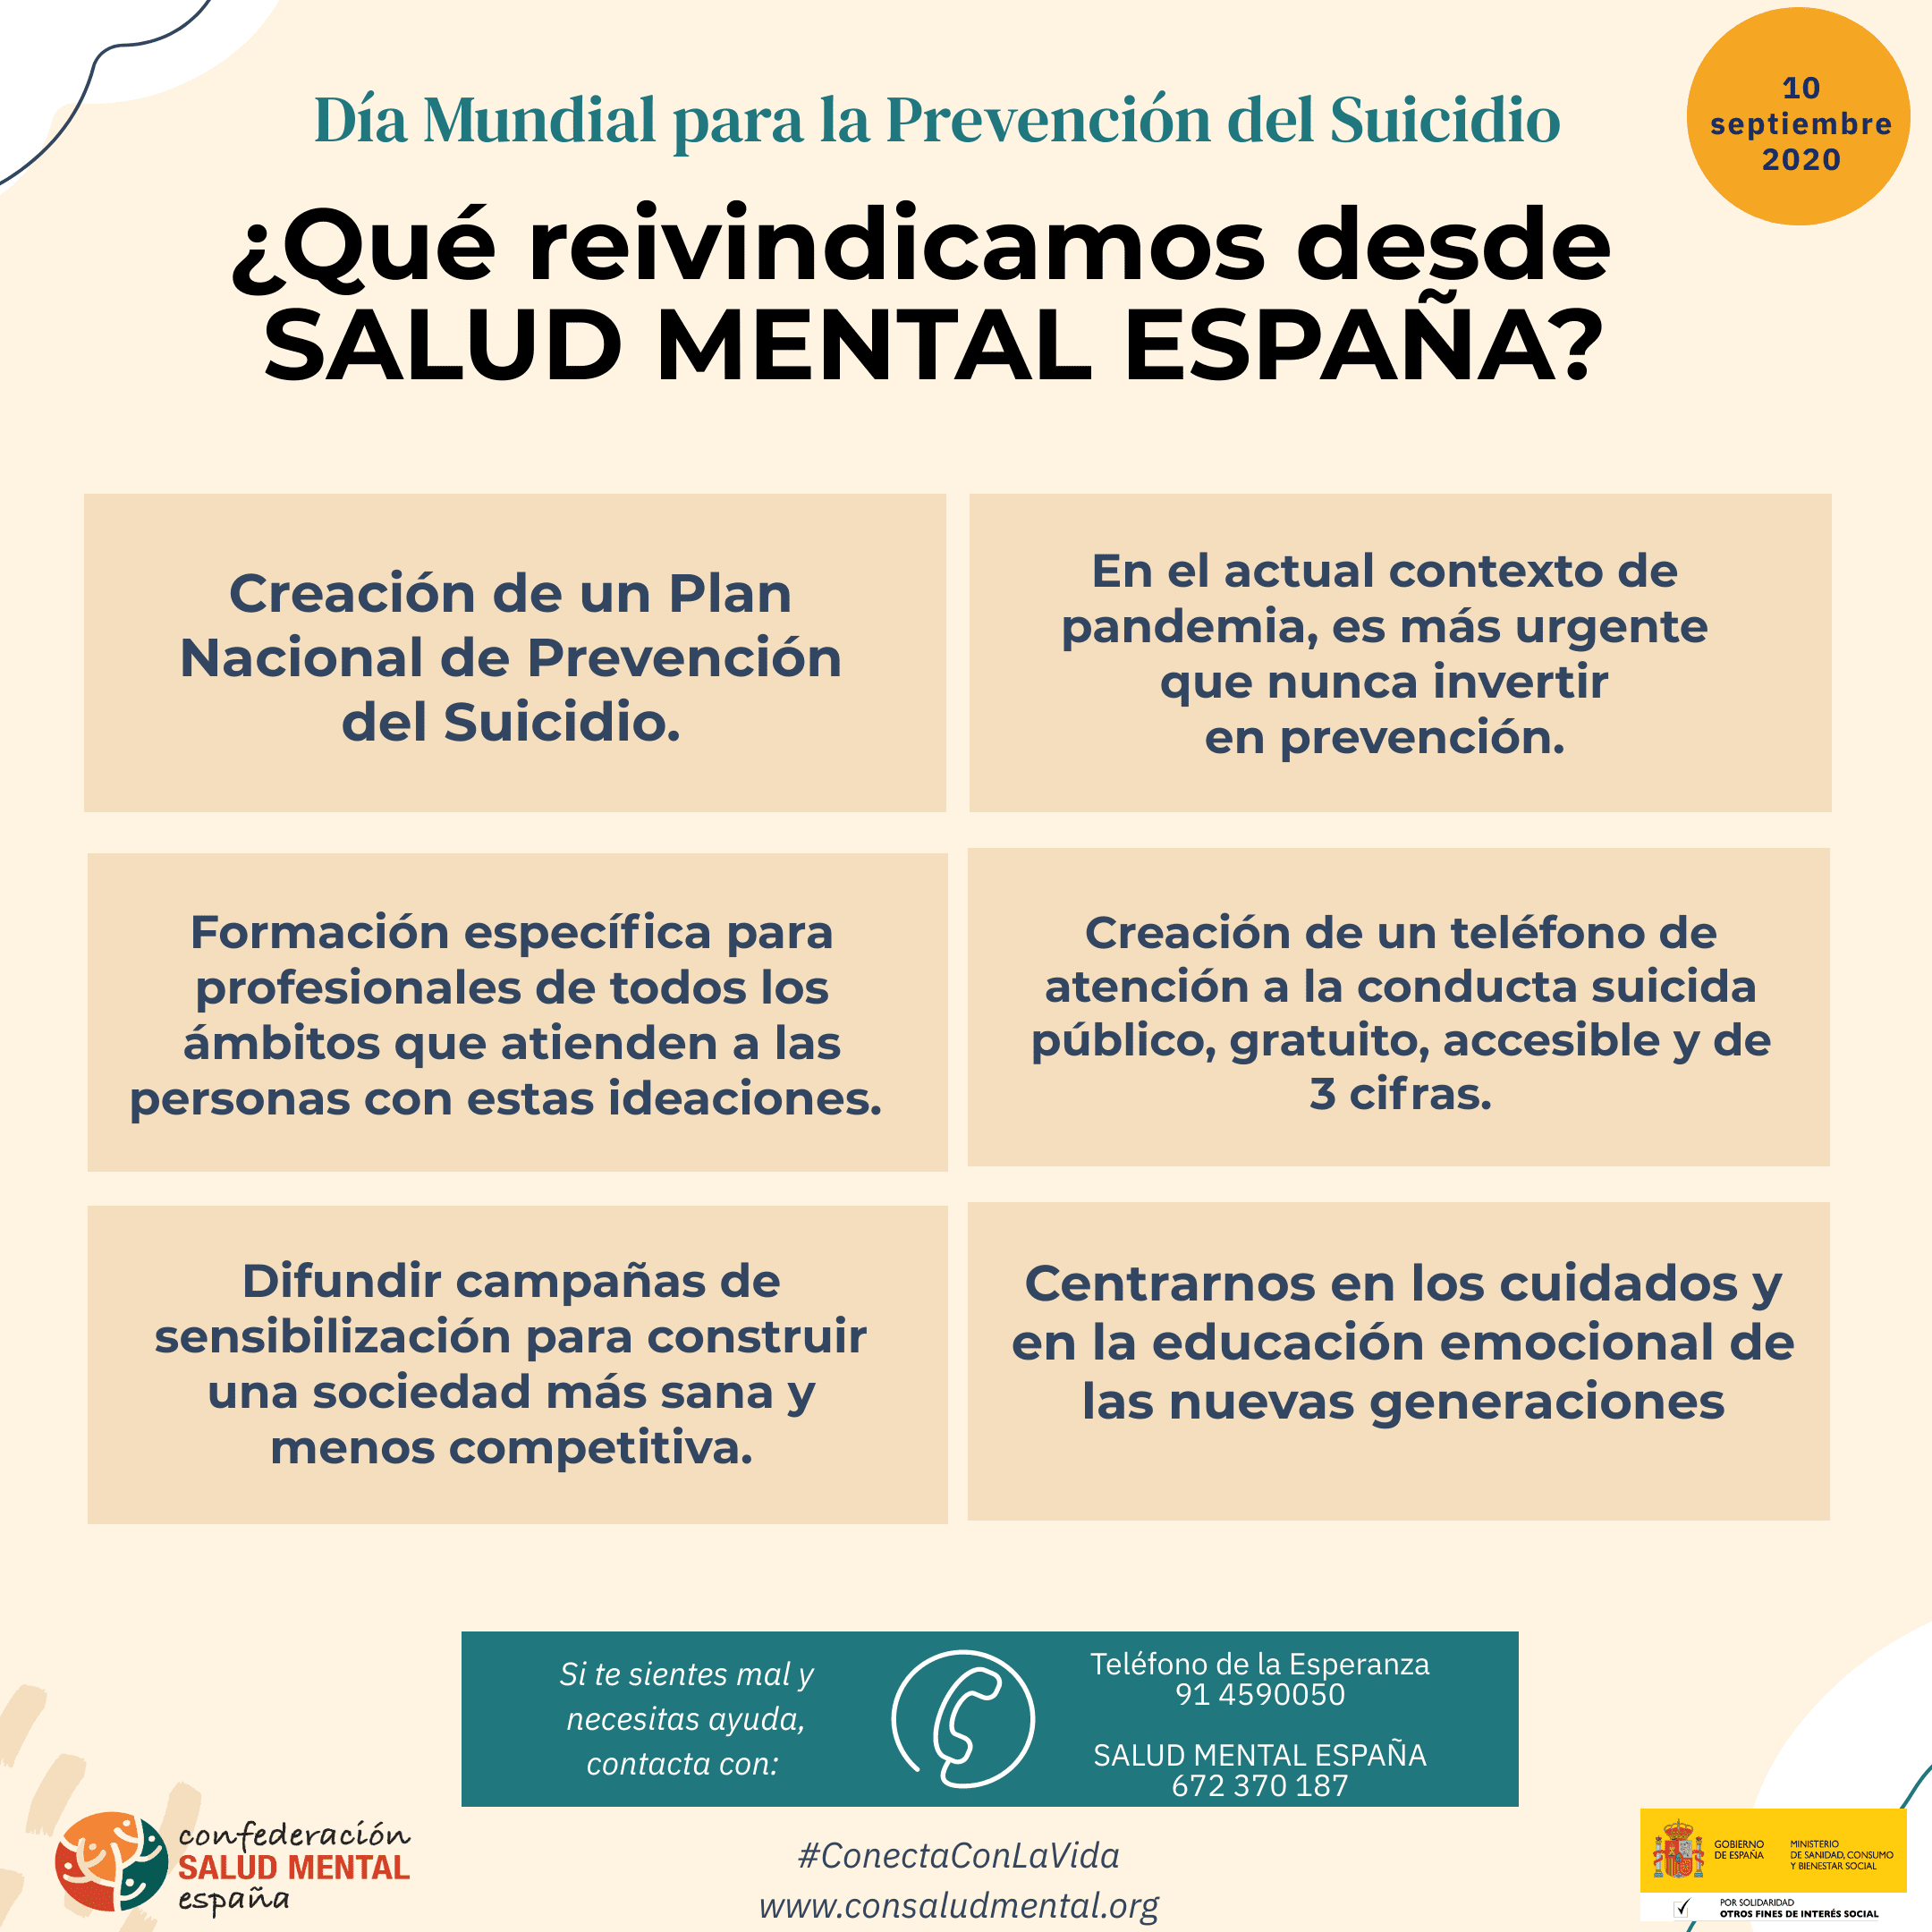 Salud Mental España urge un Plan Nacional de Prevención del Suicidio ante la mayor vulnerabilidad debido a la pandemia